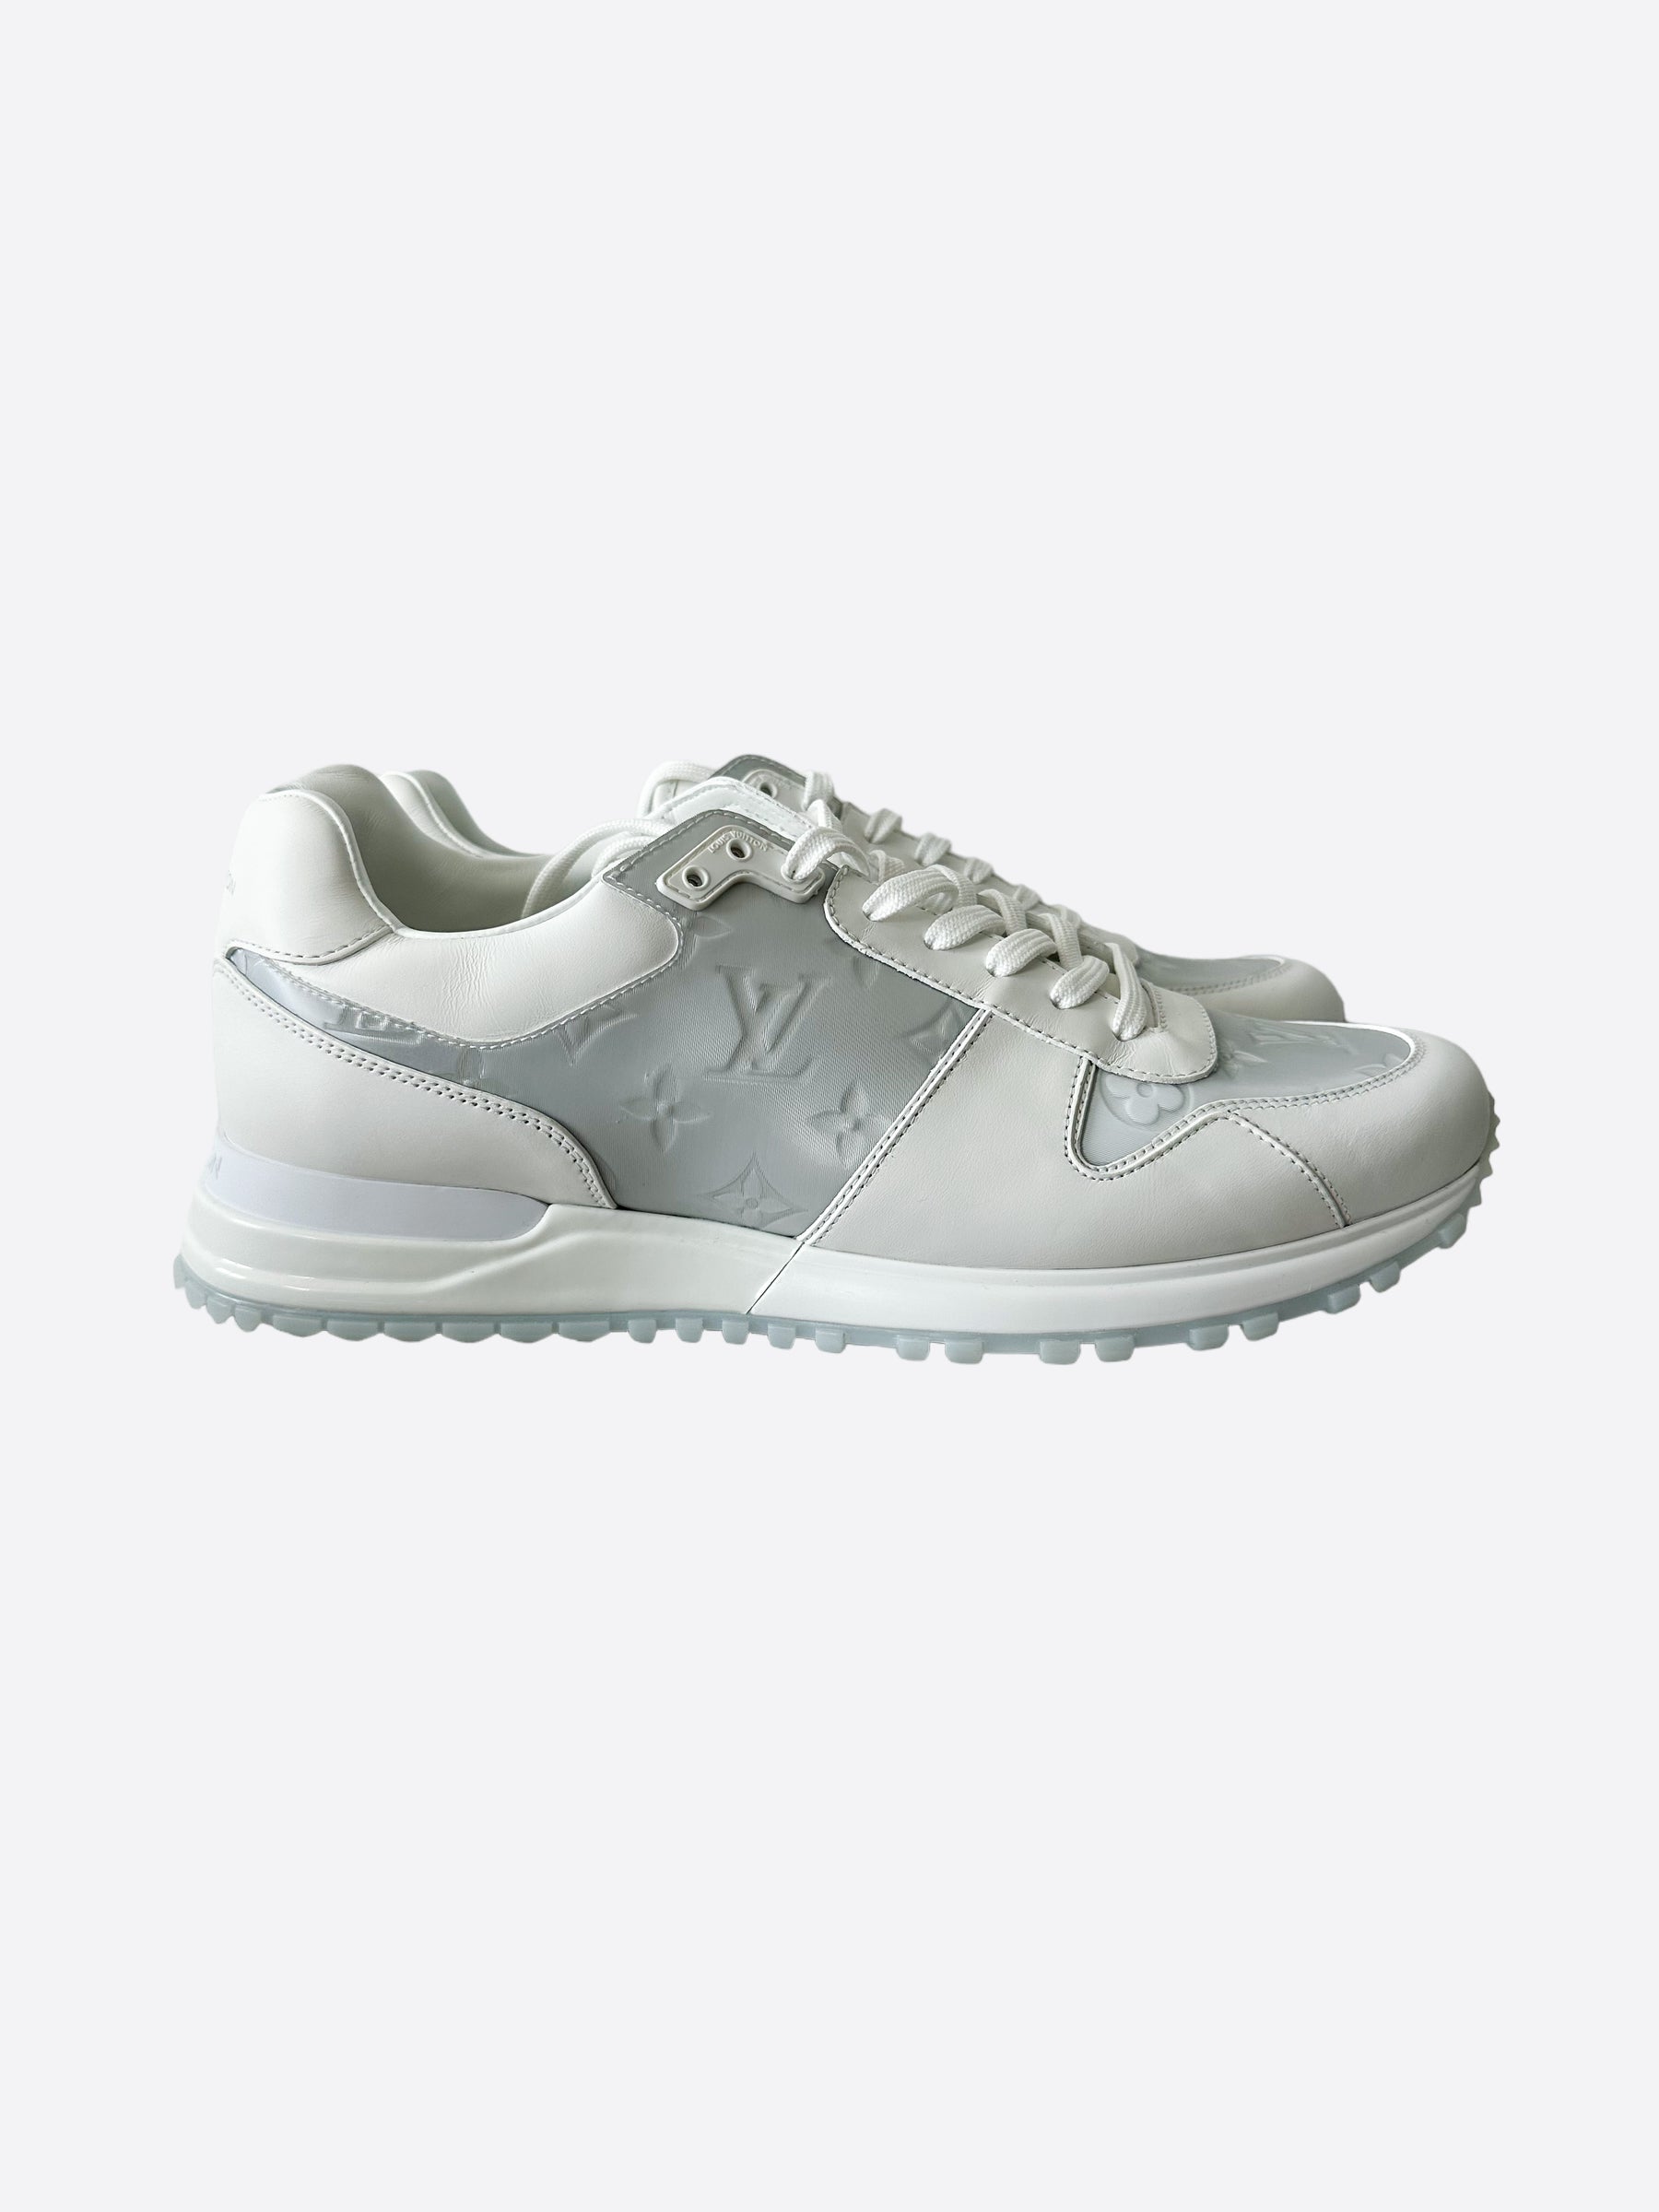 LOUIS VUITTON Calfskin Monogram Embellished Run Away Sneakers 36 White  1126170